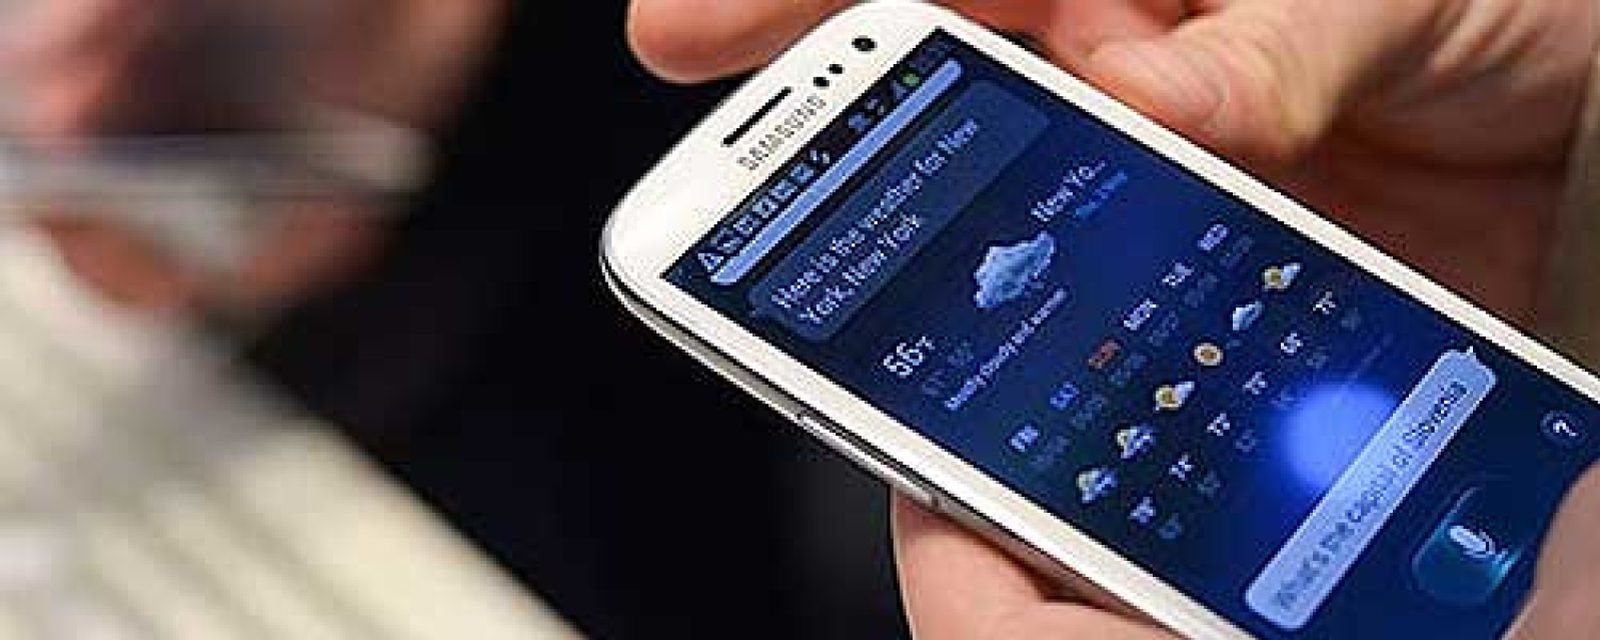 Foto: Samsung logra unos beneficios históricos y ya vende más 'smartphones' que Apple, Nokia y HTC juntos